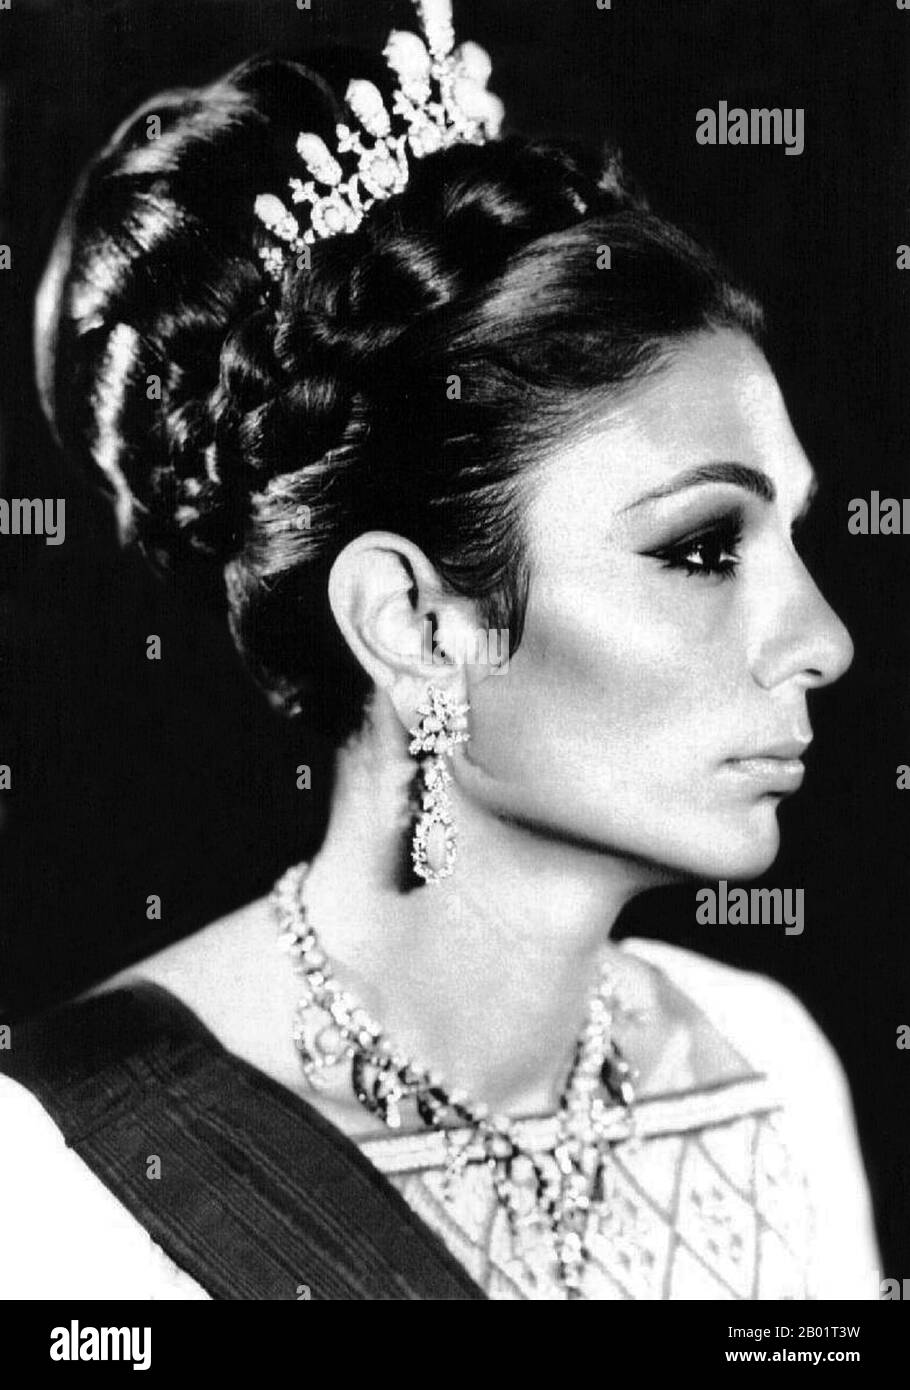 Iran/Perse : Portrait officiel de l'impératrice Farah Pahlavi (1938-), épouse et veuve de Mohammad Reza Pahlavi, le Shah d'Iran (1919-1979), c. 1970s. Farah Pahlavi (née Farah Diba) est l'ancienne reine et impératrice d'Iran. Elle est la veuve de Mohammad Reza Pahlavi, le Shah d'Iran, et seule impératrice de l'Iran moderne. Elle est reine consort d'Iran de 1959 à 1967 et impératrice consort de 1967 jusqu'à son exil en 1979. Bien que les titres et distinctions de la famille impériale iranienne aient été abolis en Iran par le gouvernement islamique, elle est toujours appelée impératrice ou Shahbanou, par courtoisie. Banque D'Images